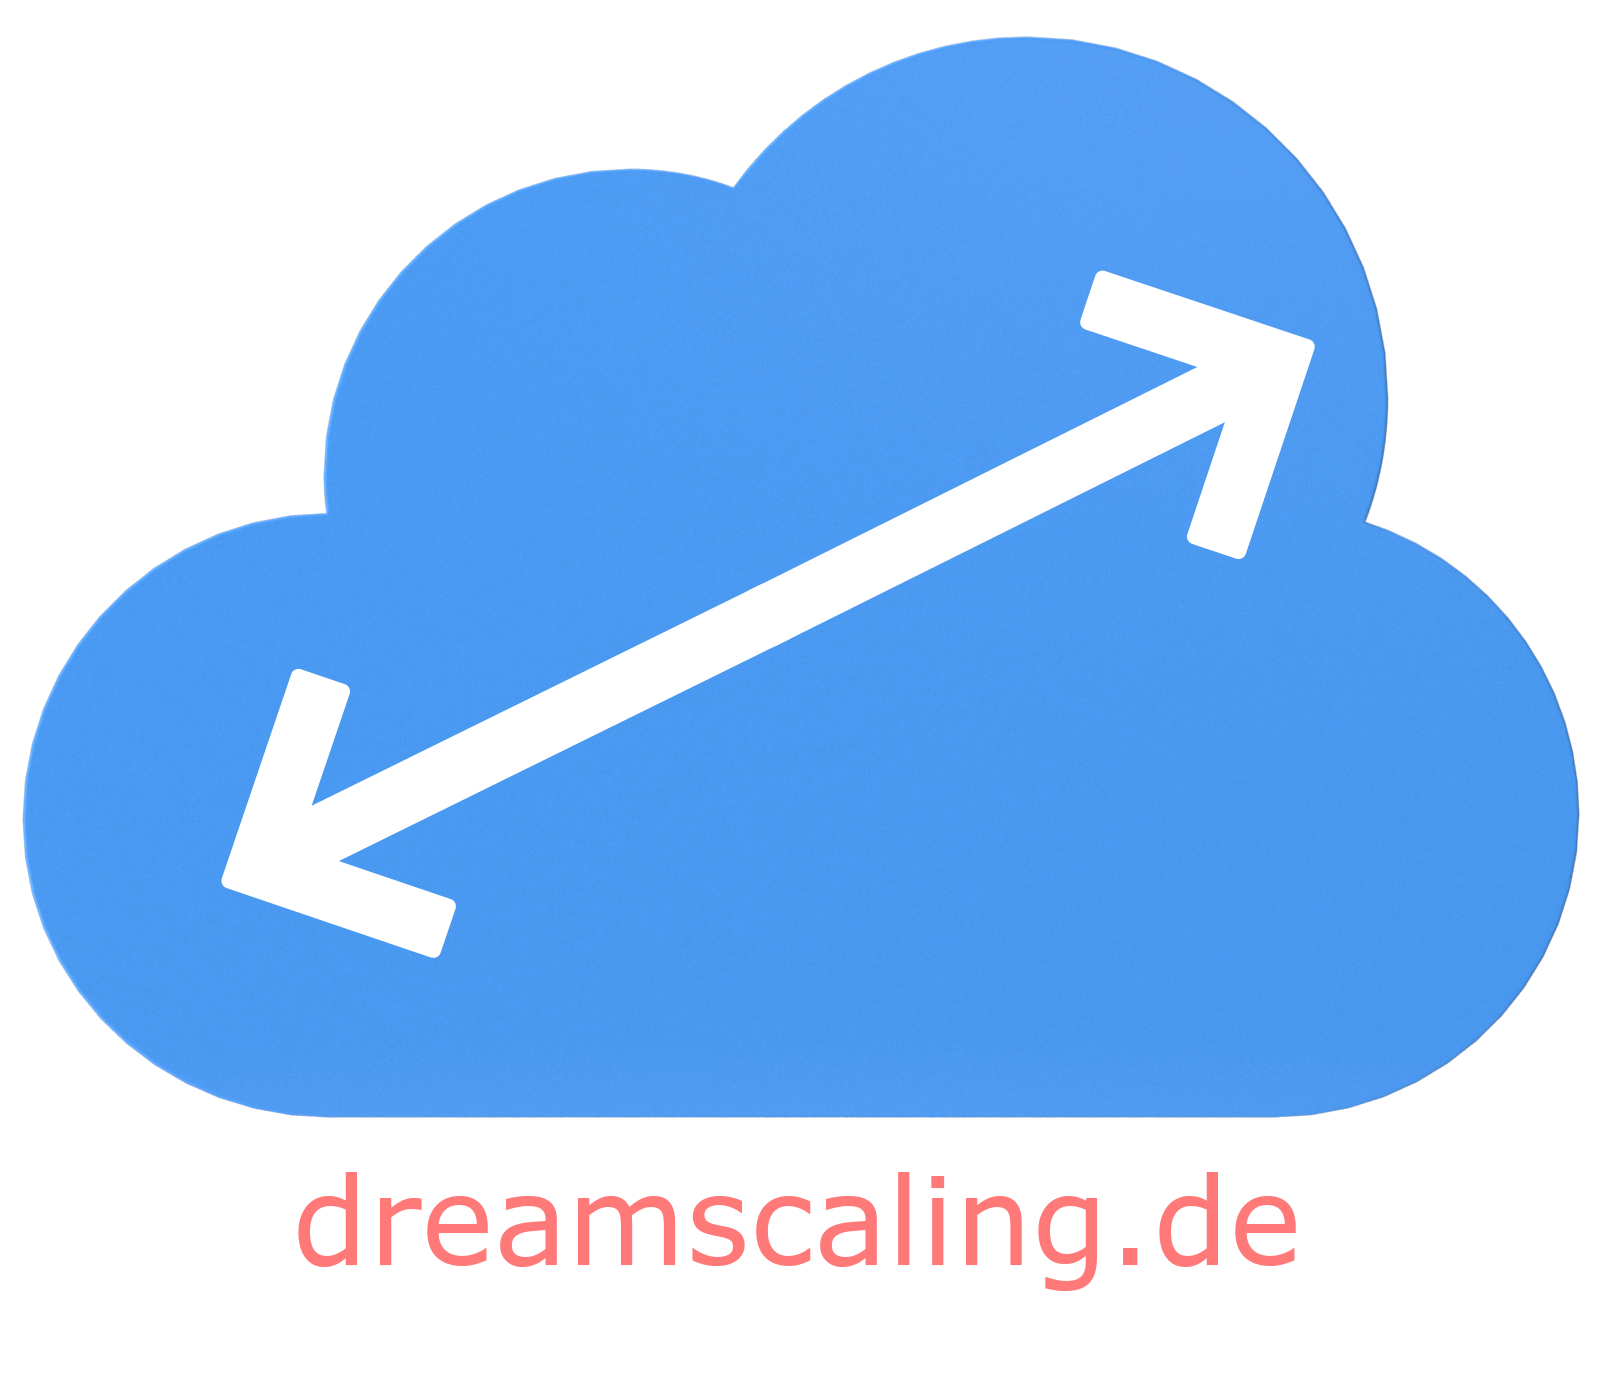 dreamscaling.de